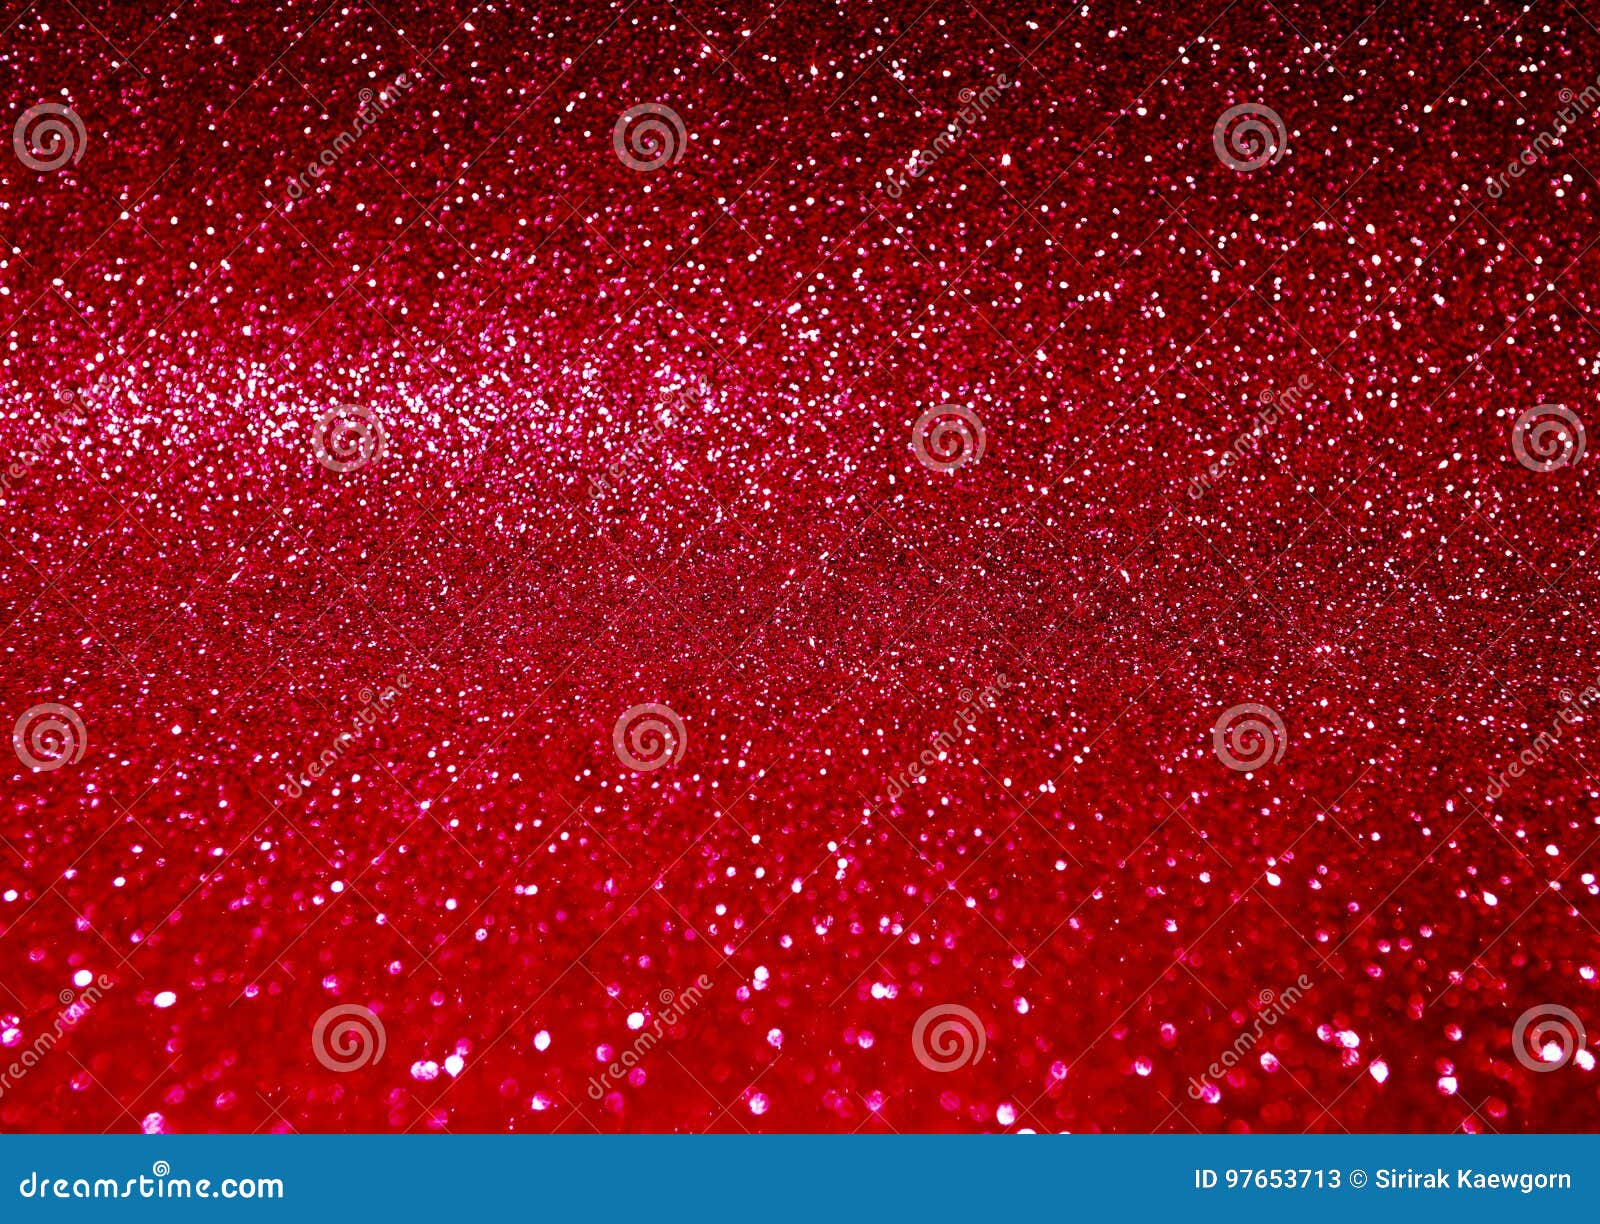 Featured image of post Fundo Vermelho Liso Brilhante Pngtree fornece cole o de fundos hd sobre fundo de natal fundo vermelho do p ster de promo o de natal